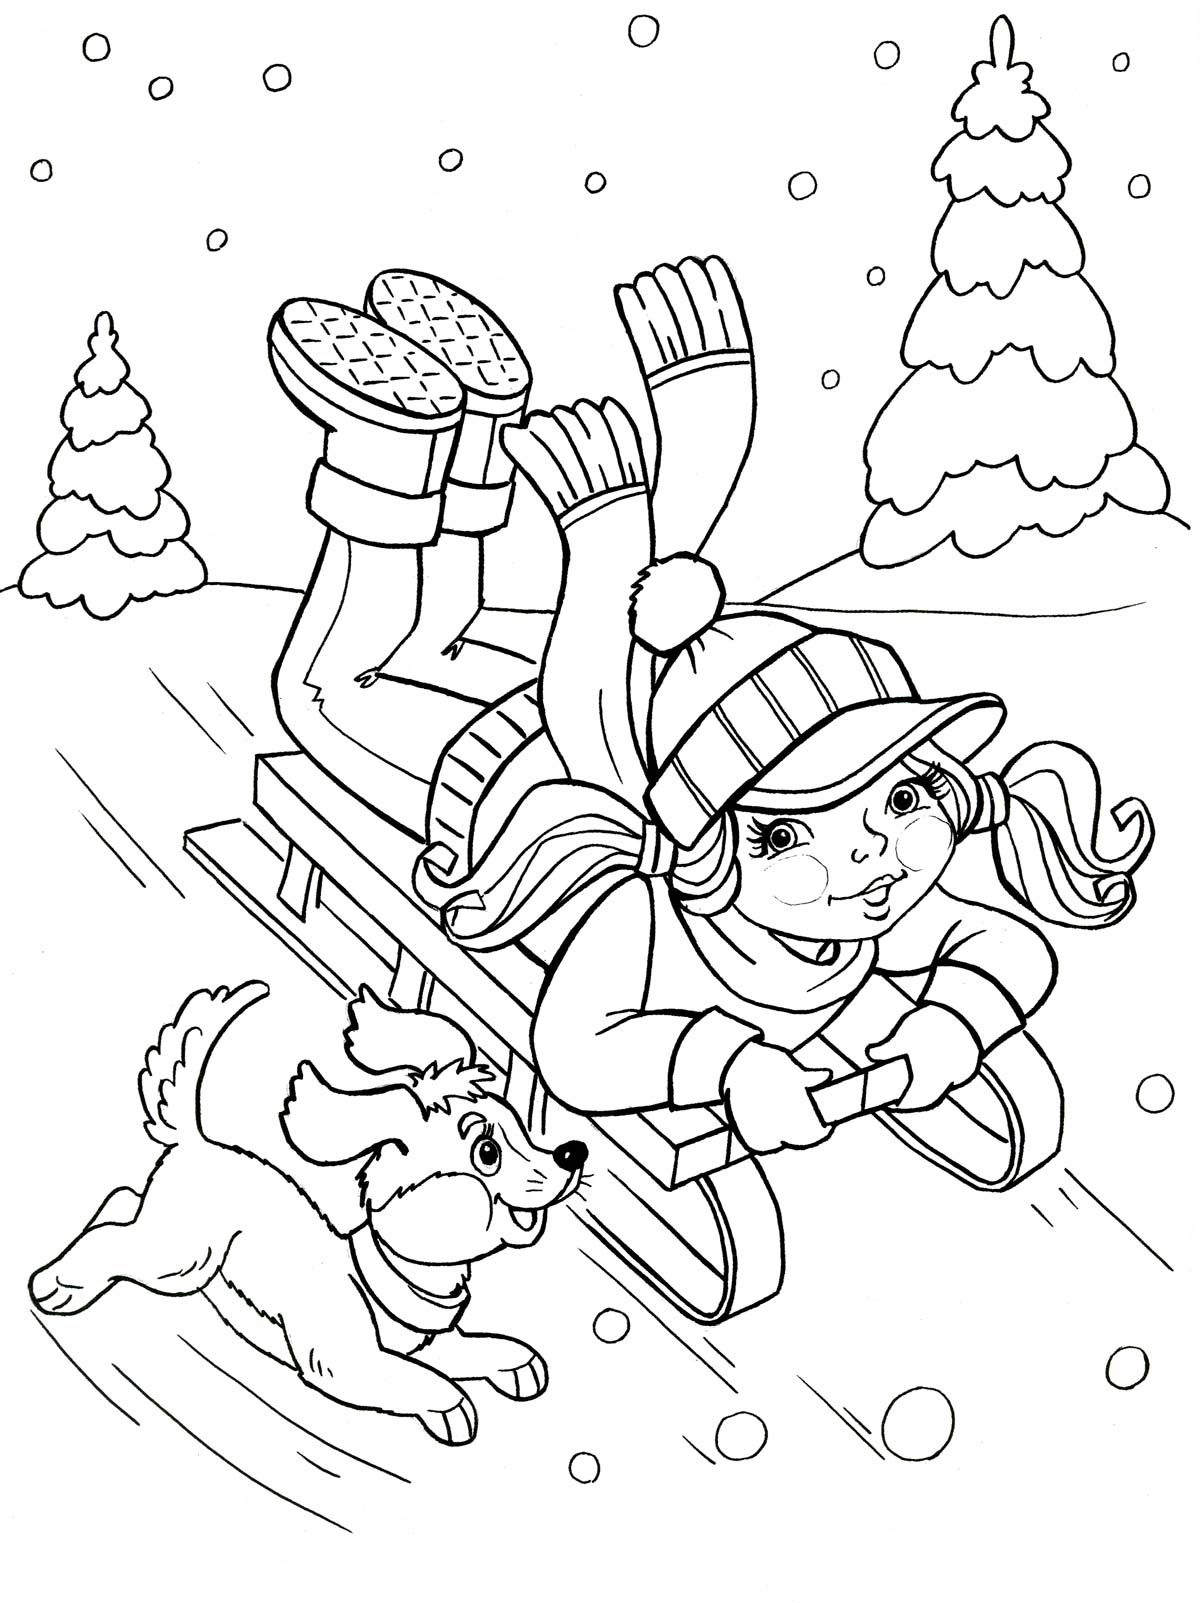 Girl on a sled